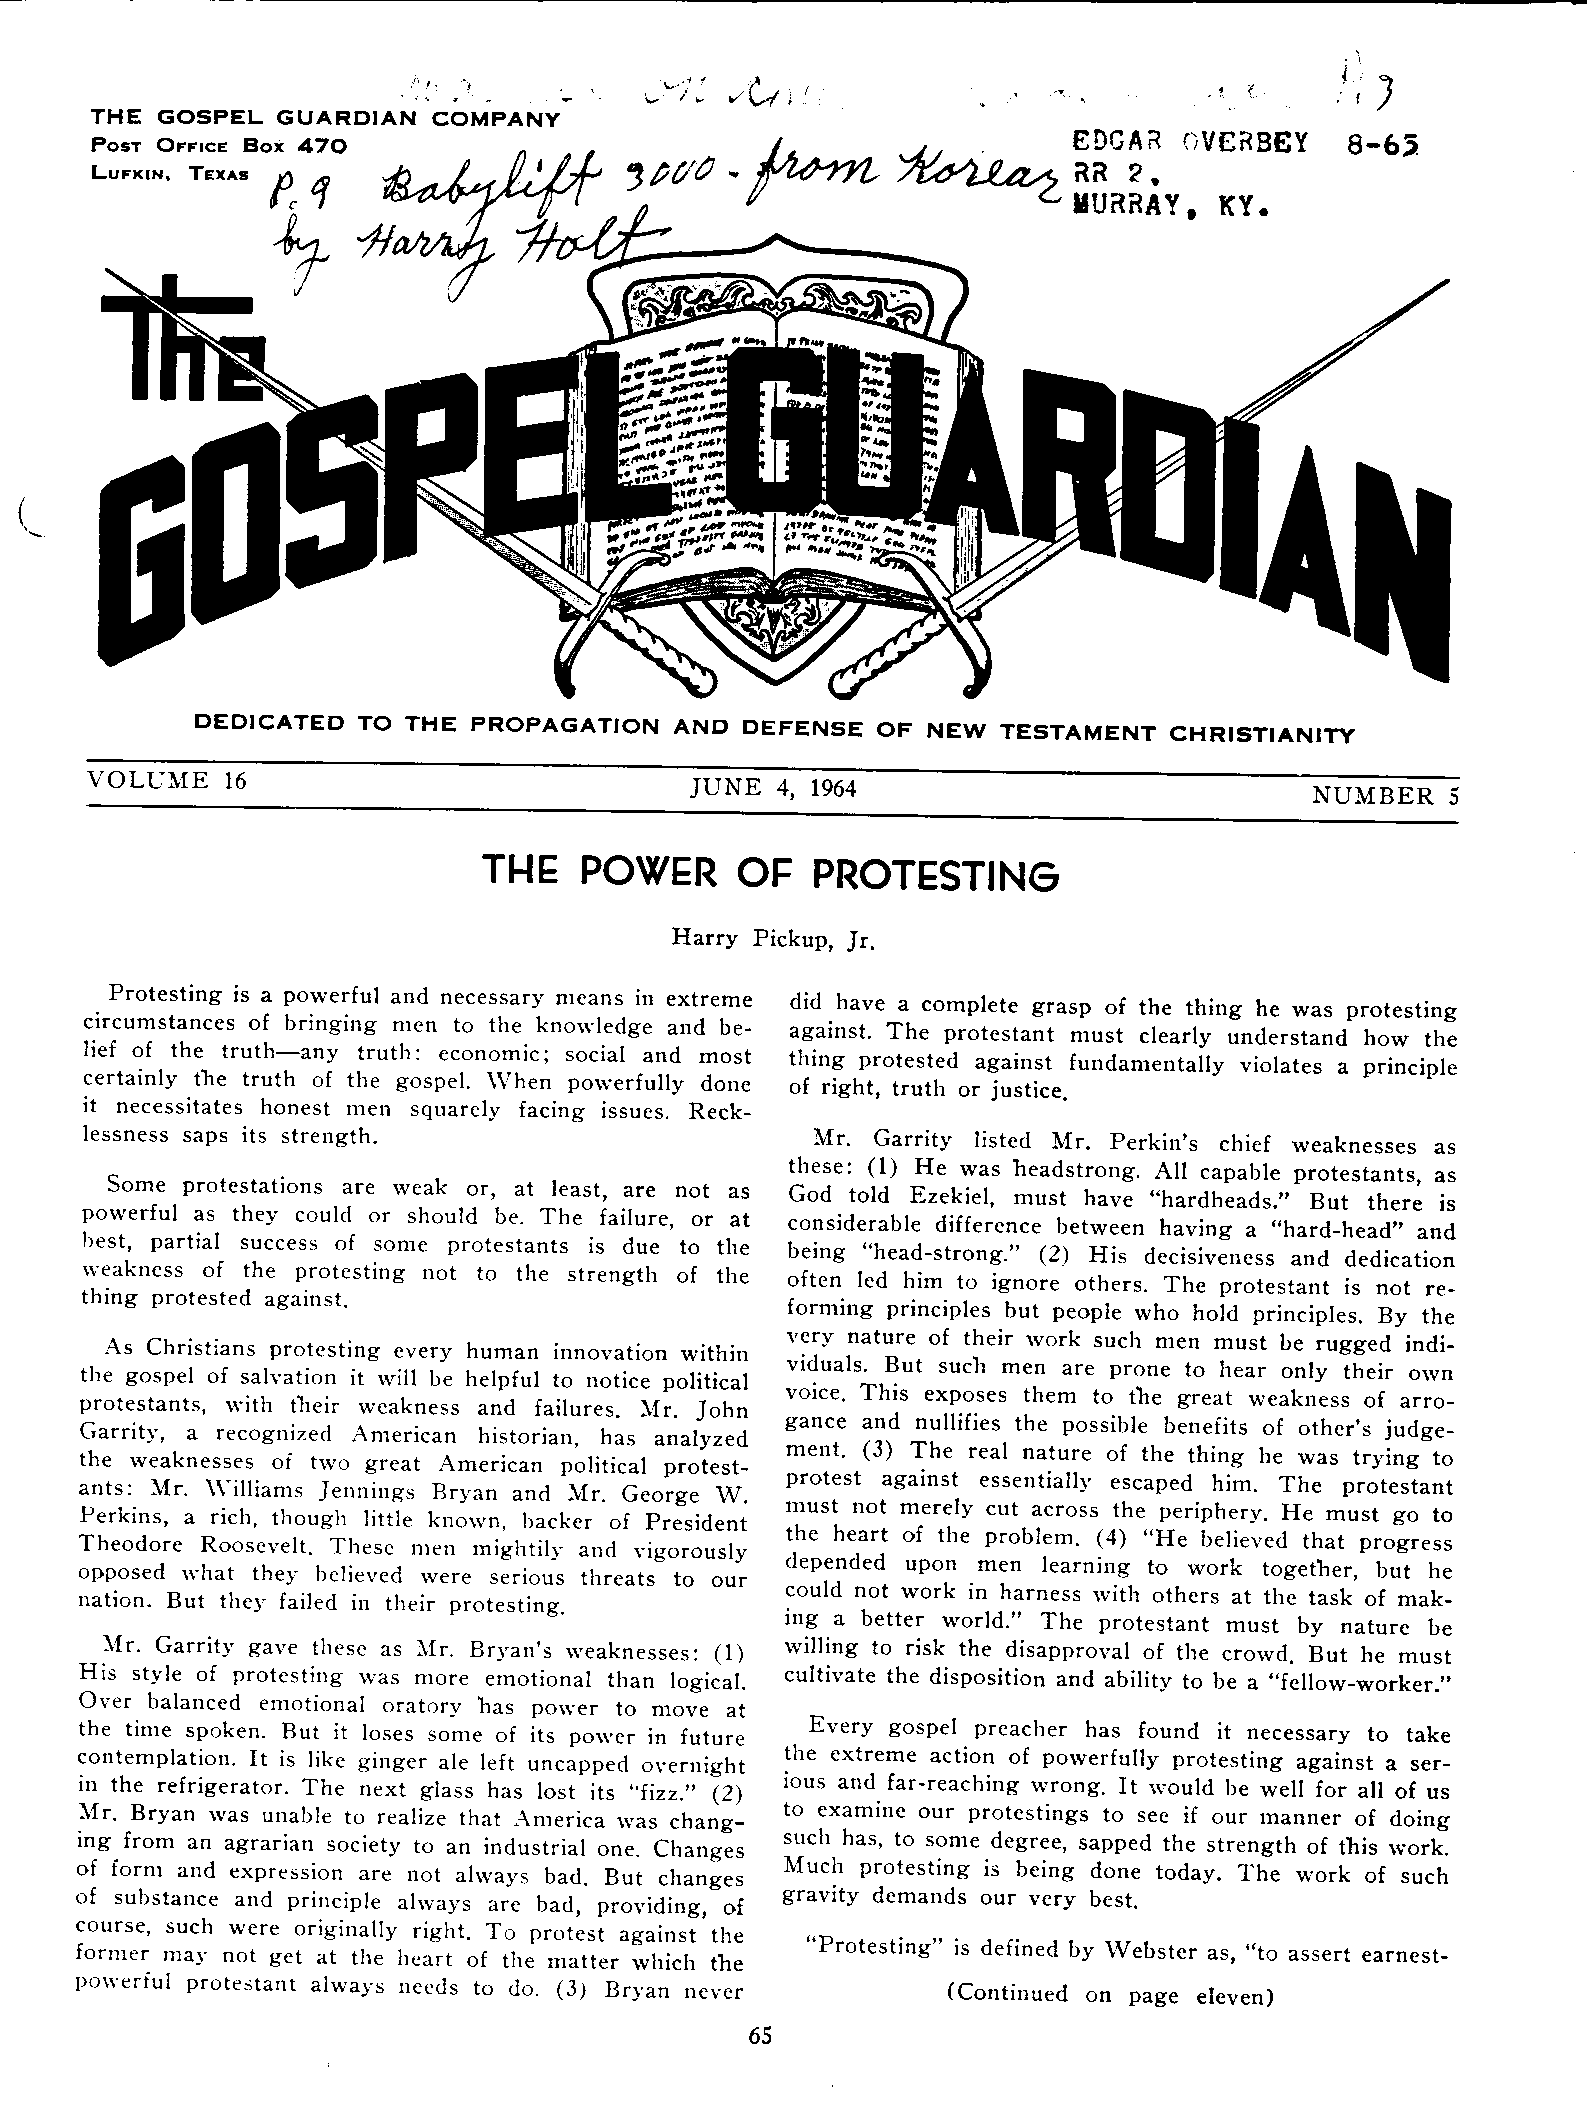 Gospel Guardian Original: Vol.16 No.5 Pg.1